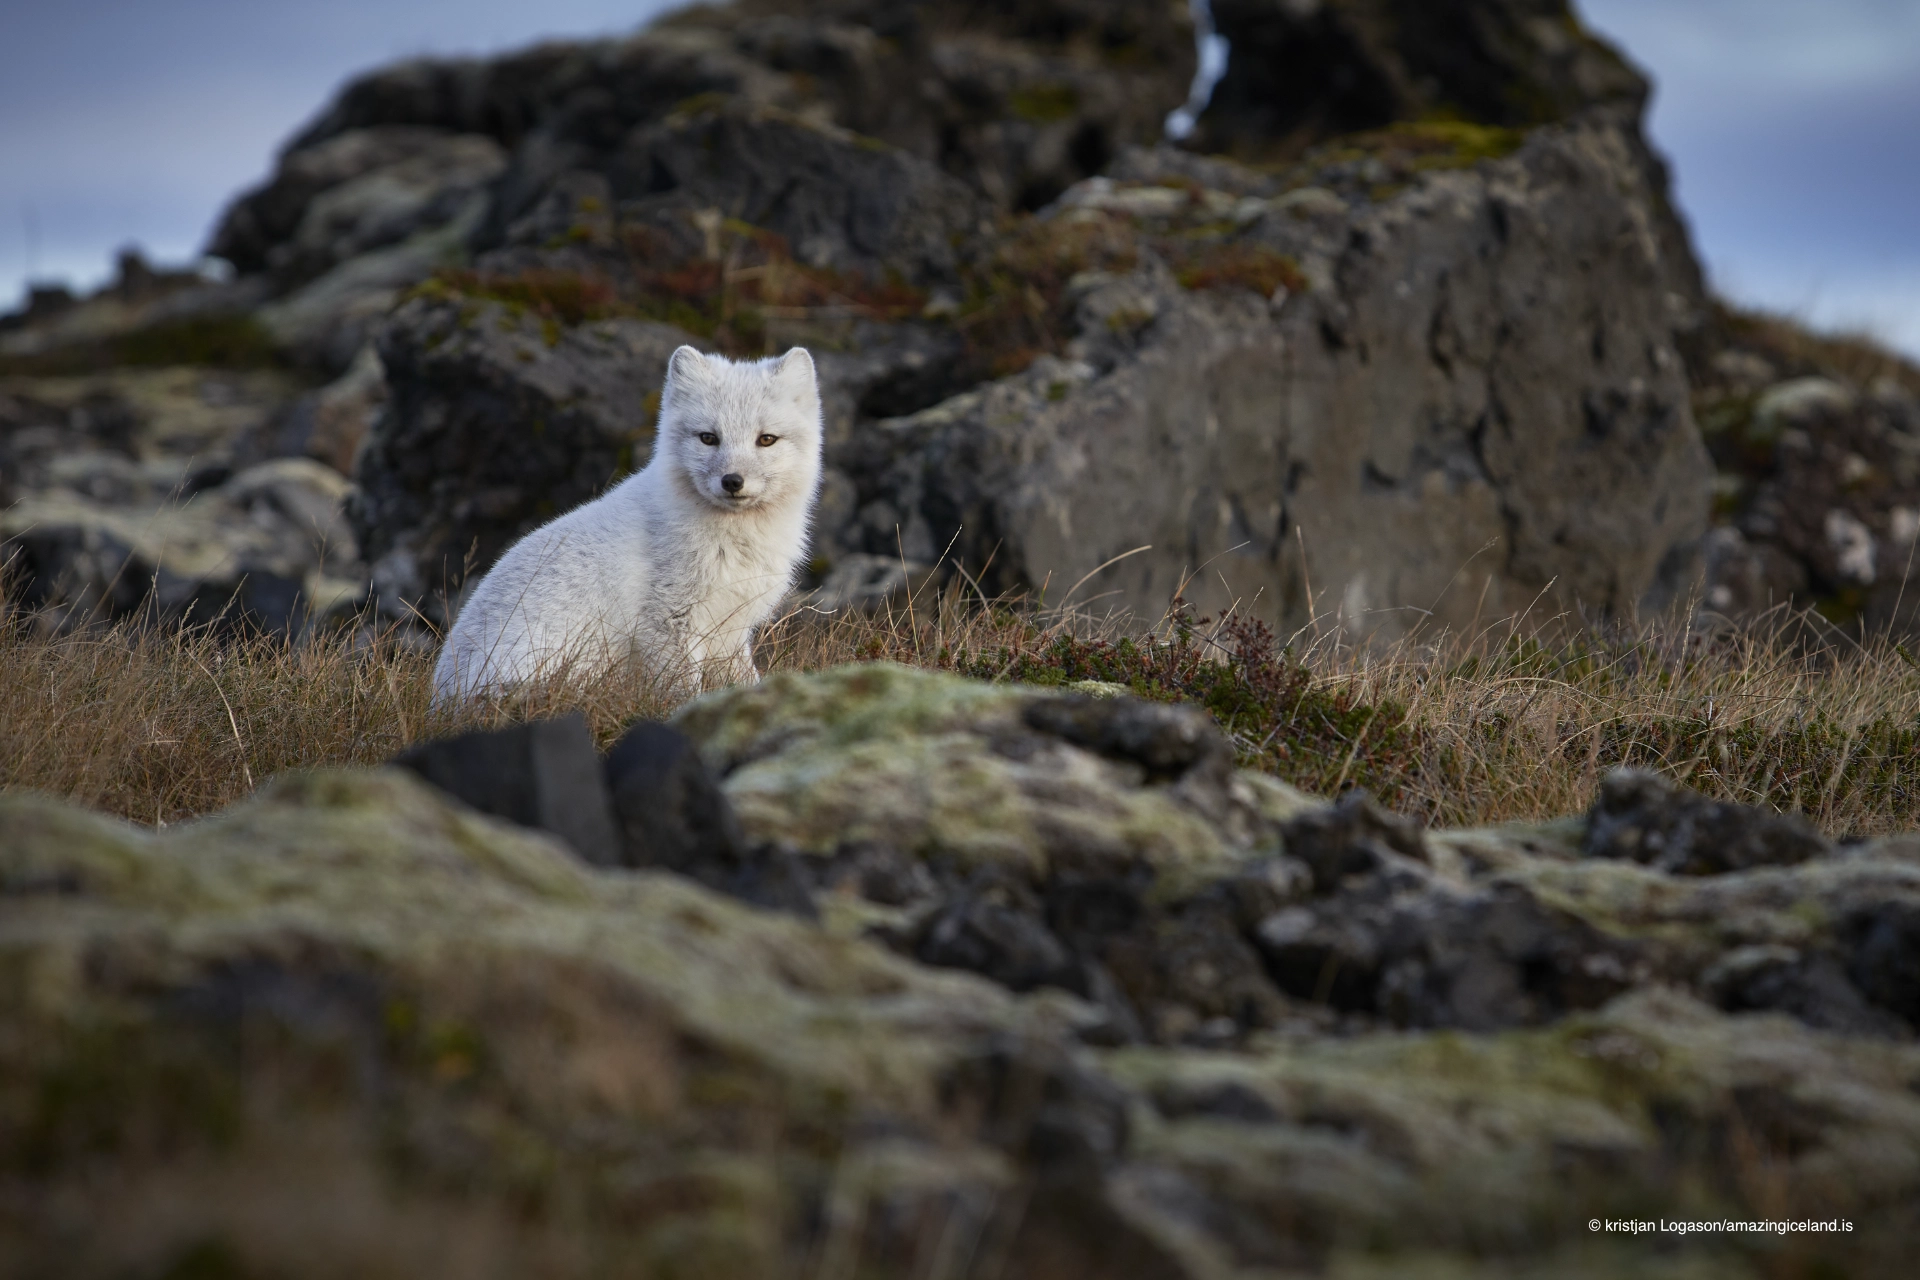 Gestur the Arctic fox (Vulpes lagopus)